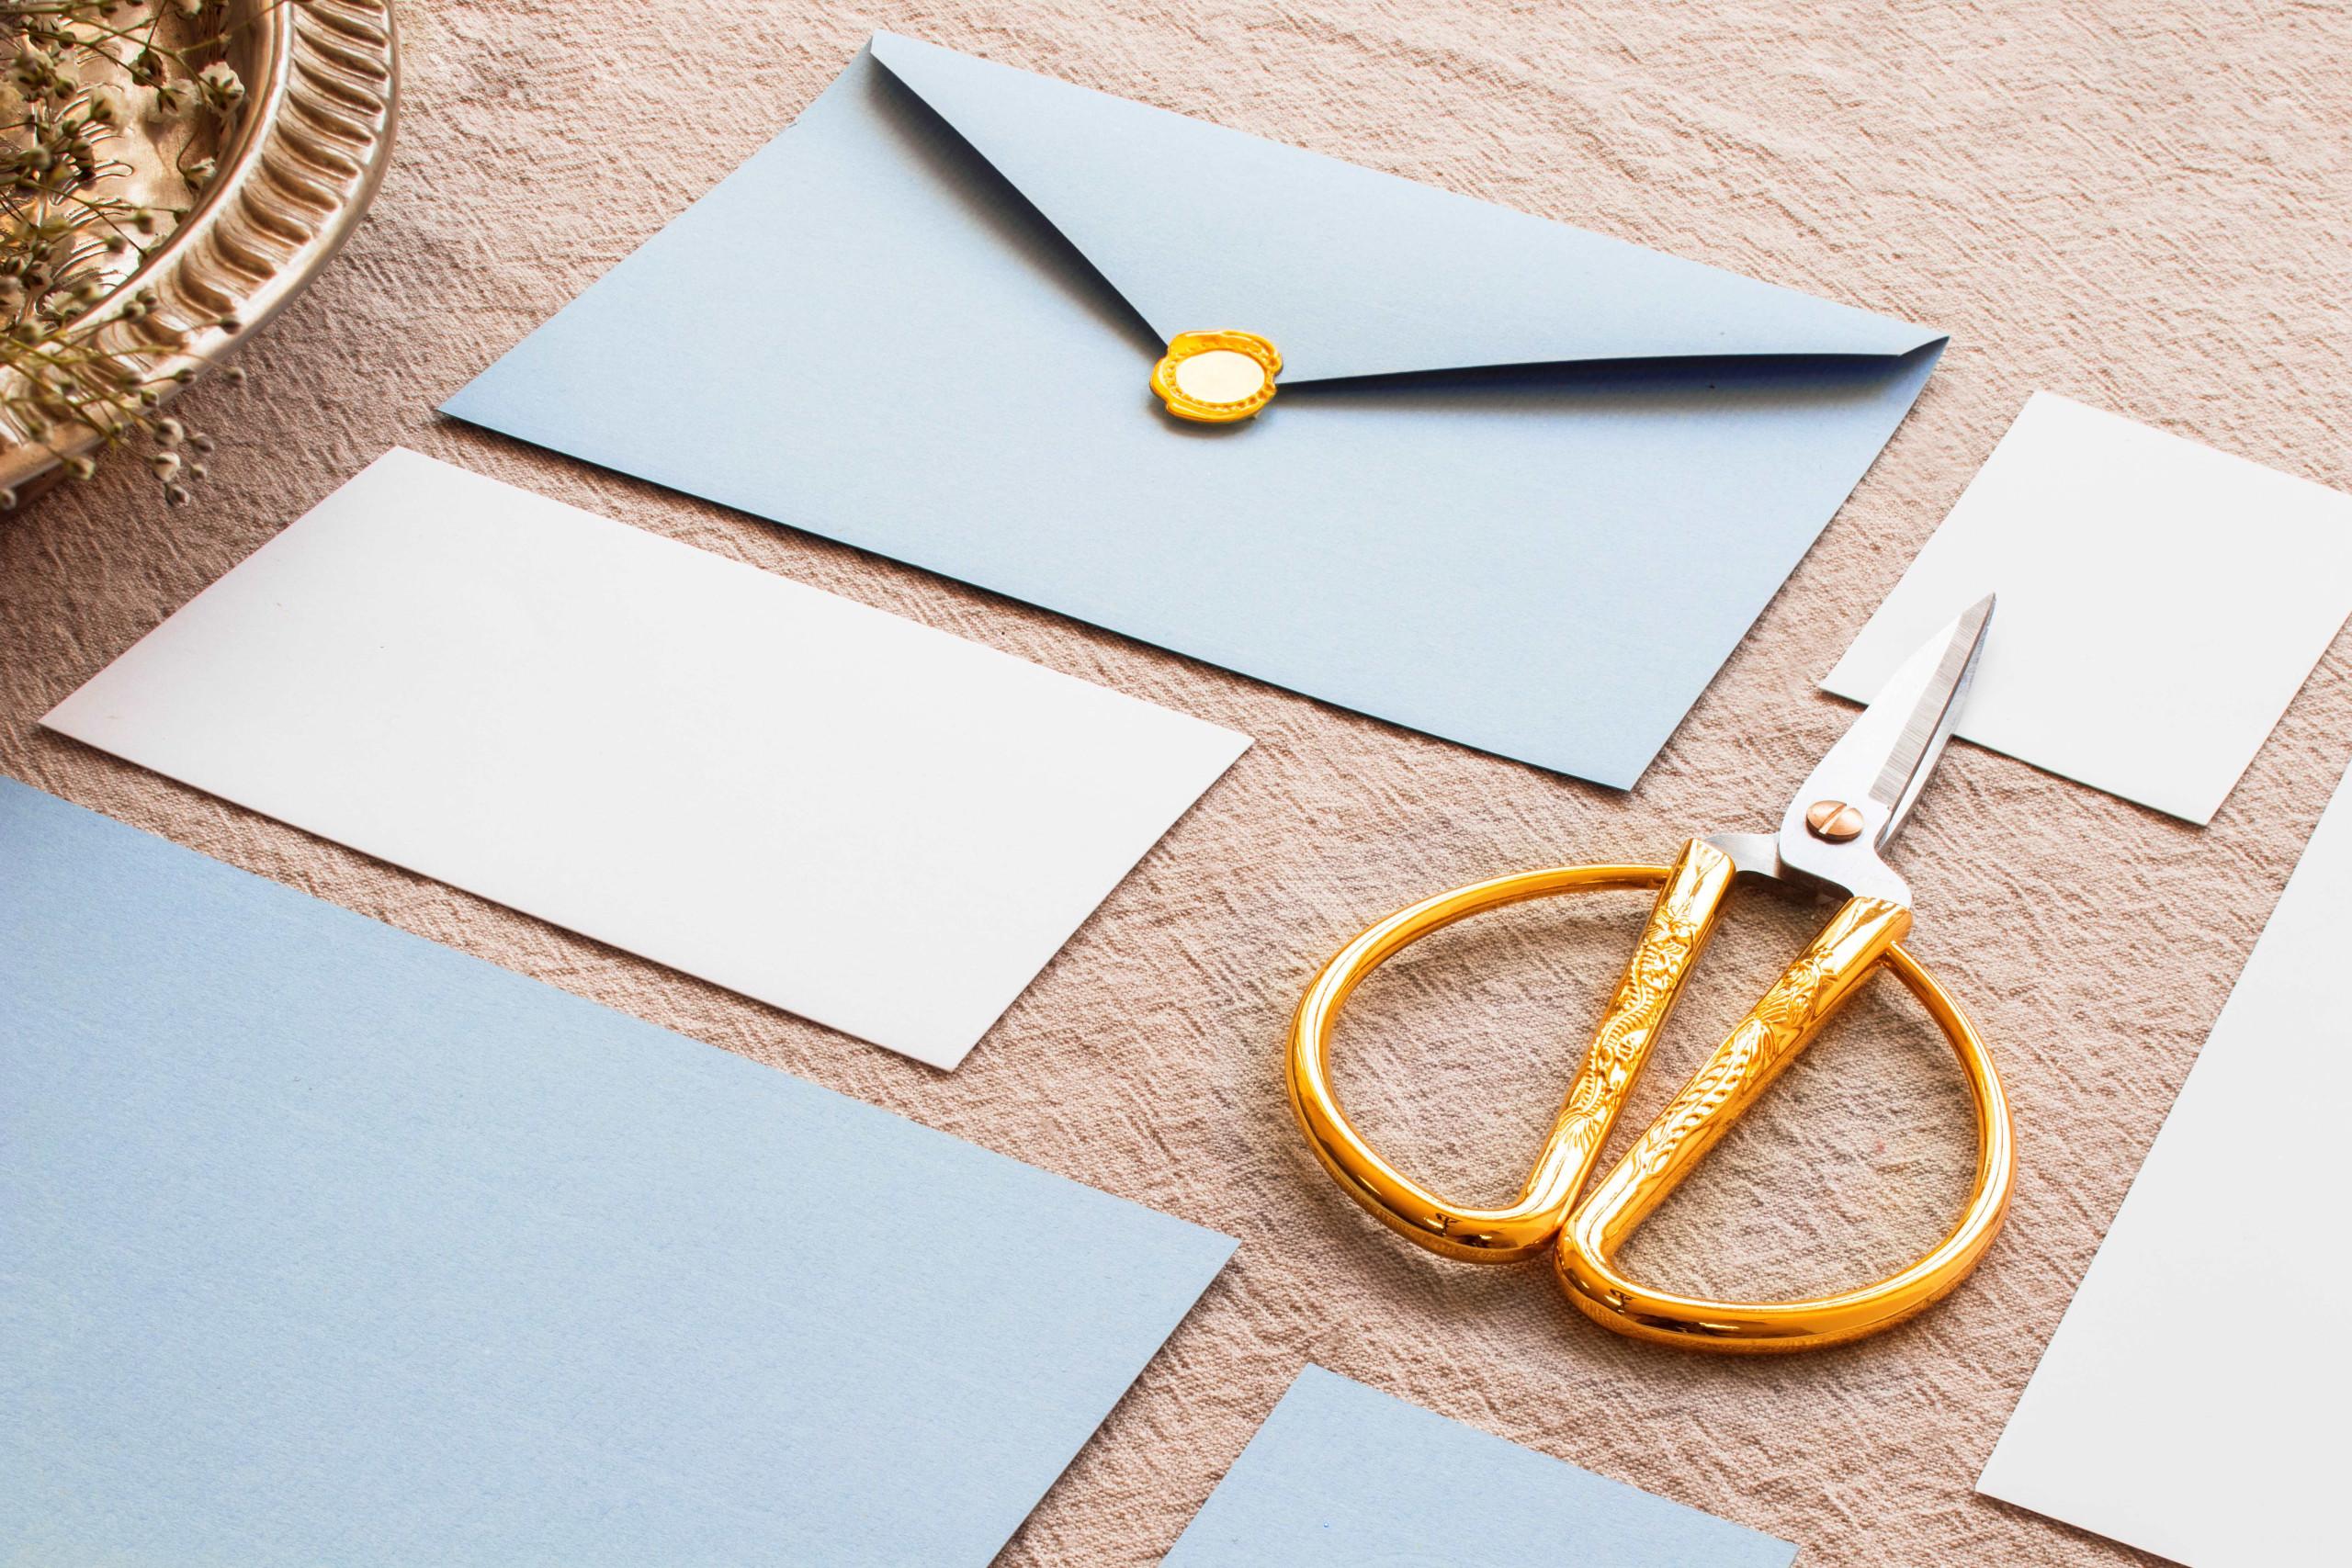 modré a biele obálky na hnedom podklade s nožnicami